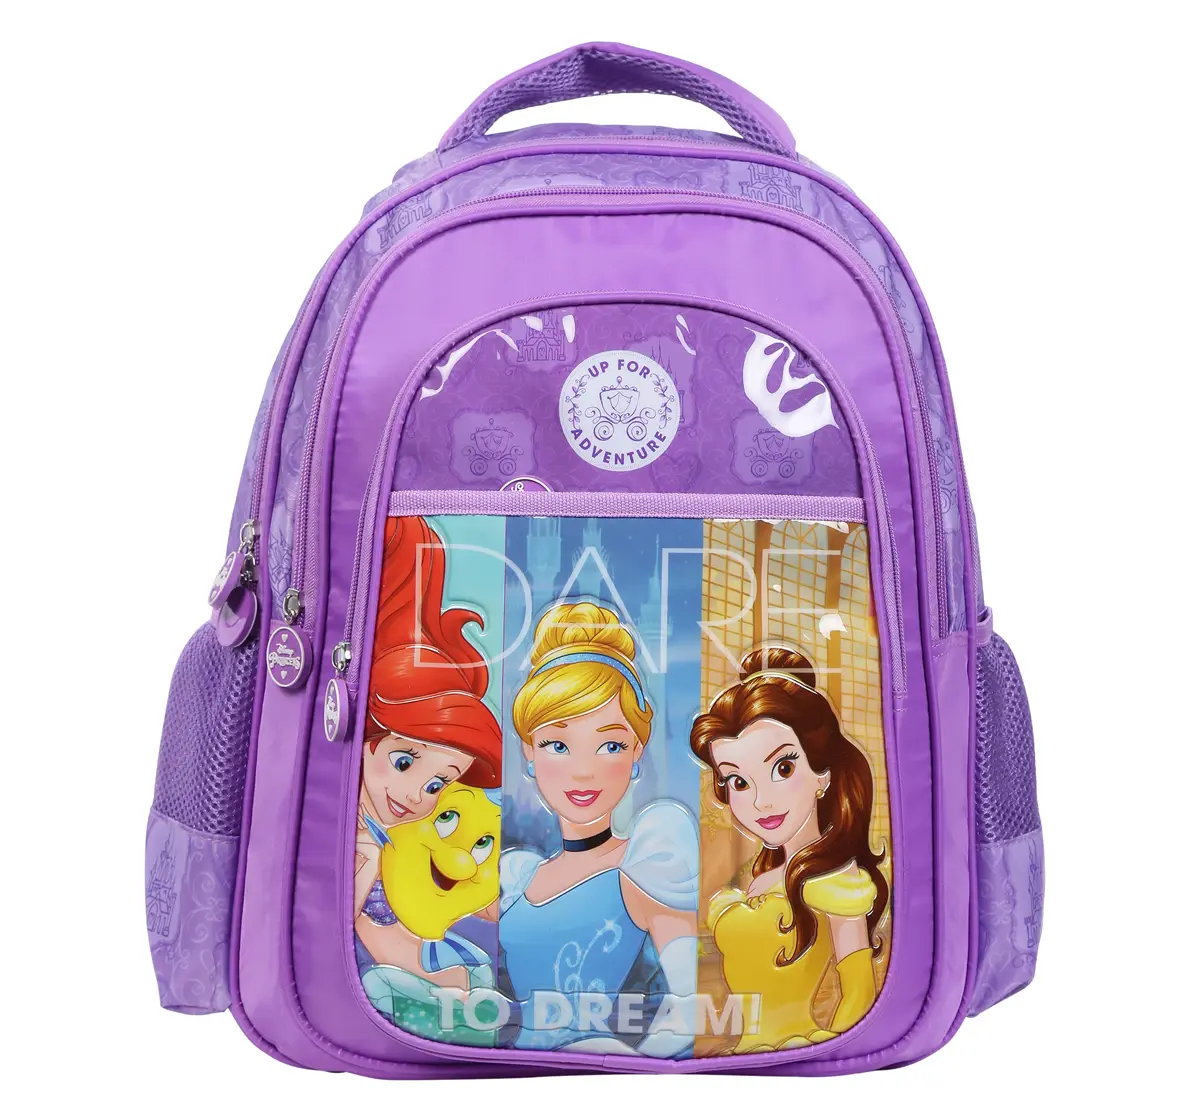 Simba Princess Adventure 18 Backpack Multicolor 3Y+